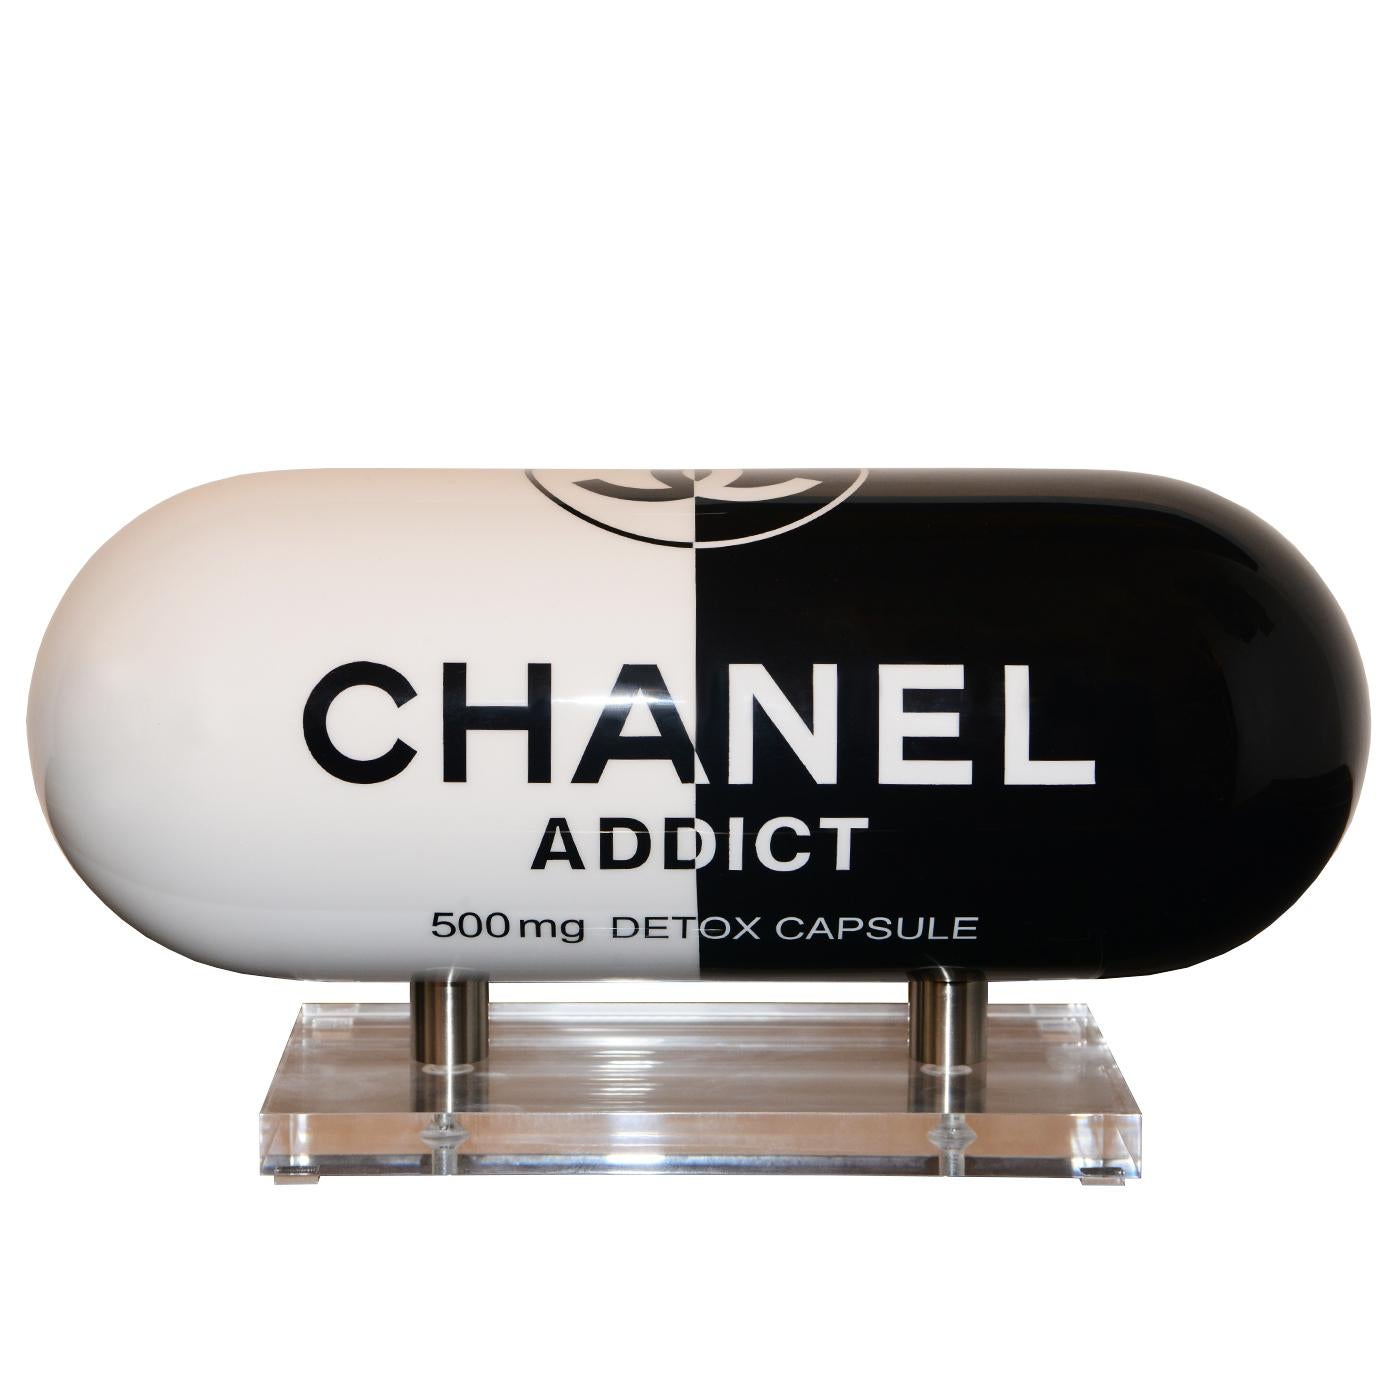 chanel addict pill